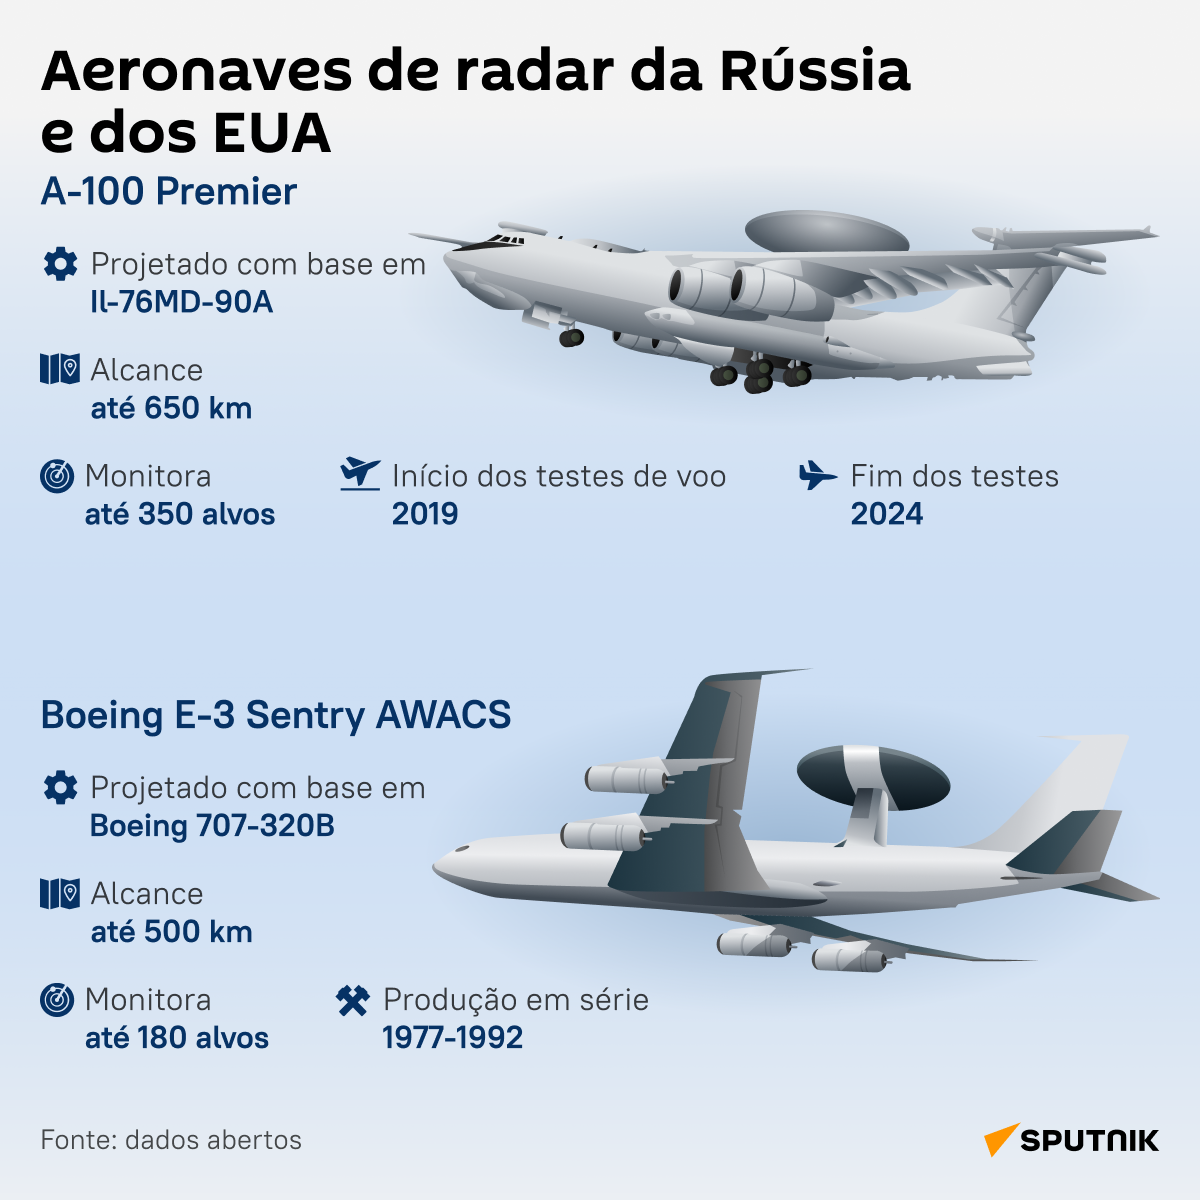 A-100 Premier russa vs. E-3 Sentry AWACS dos EUA: descubra a melhor aeronave de radar - Sputnik Brasil